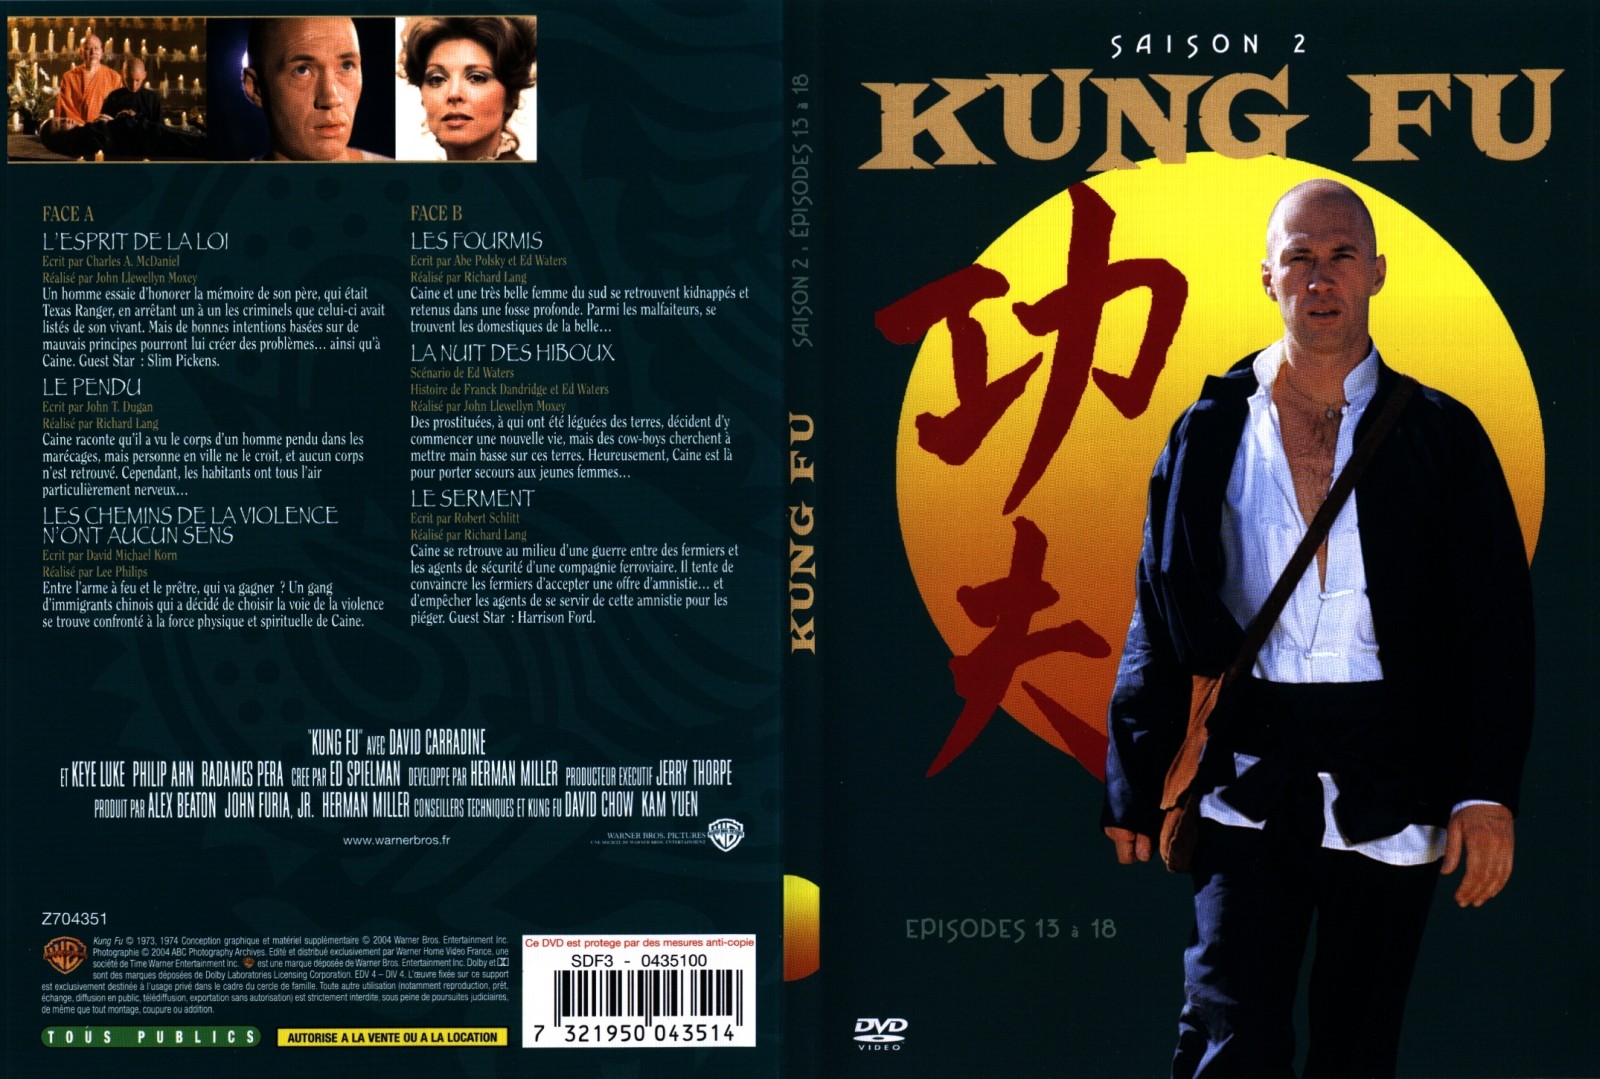 Jaquette DVD Kung fu saison 2 vol 3 - SLIM